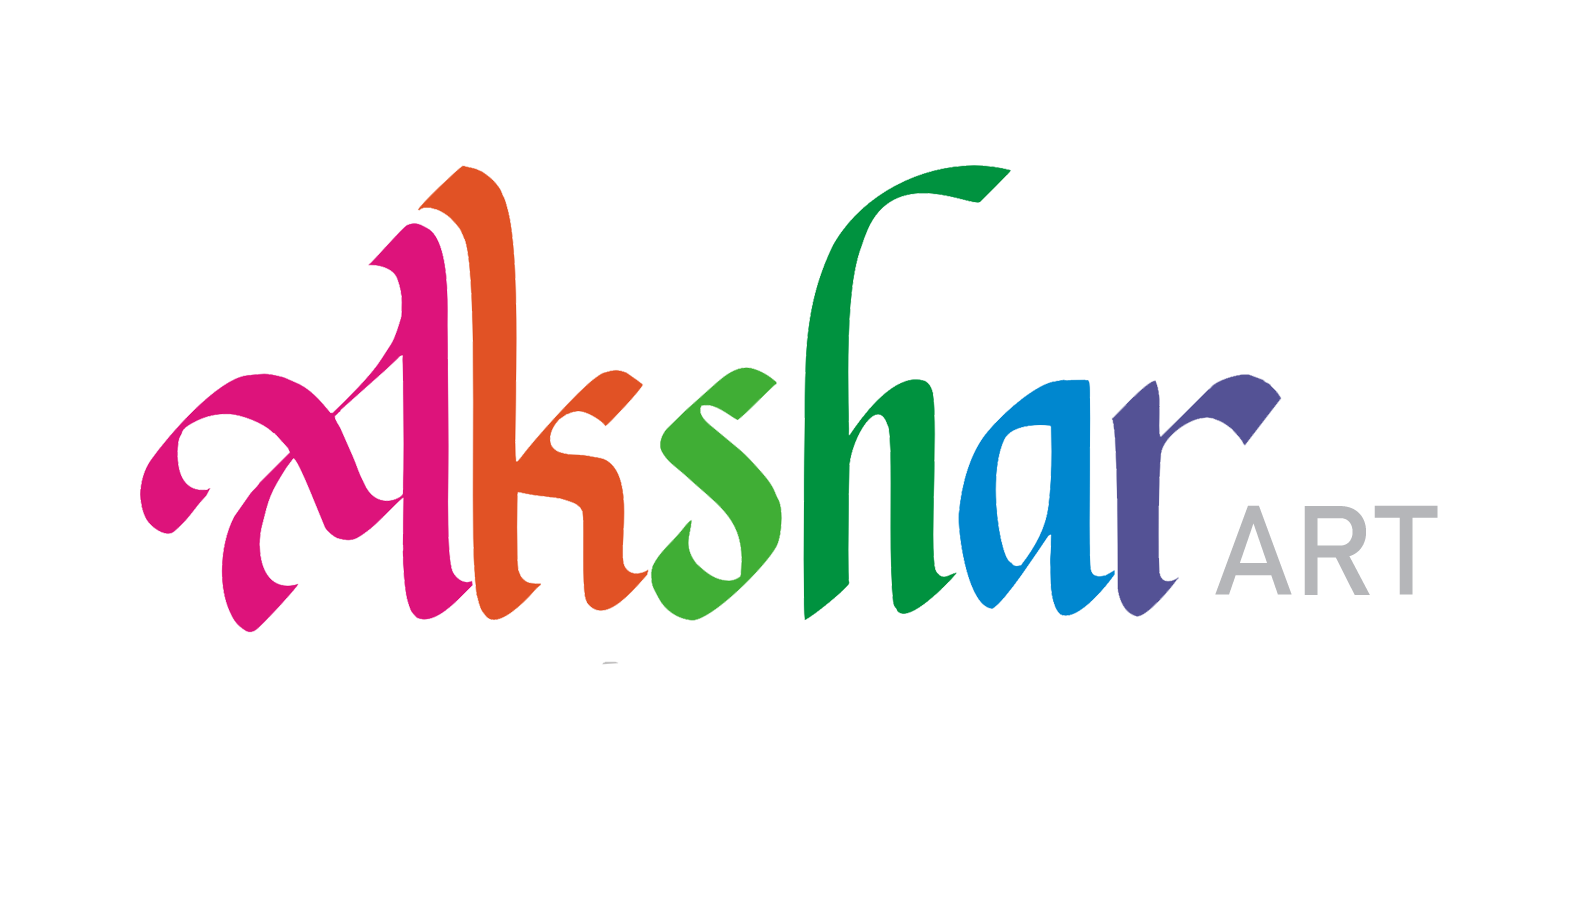 Akshar Art